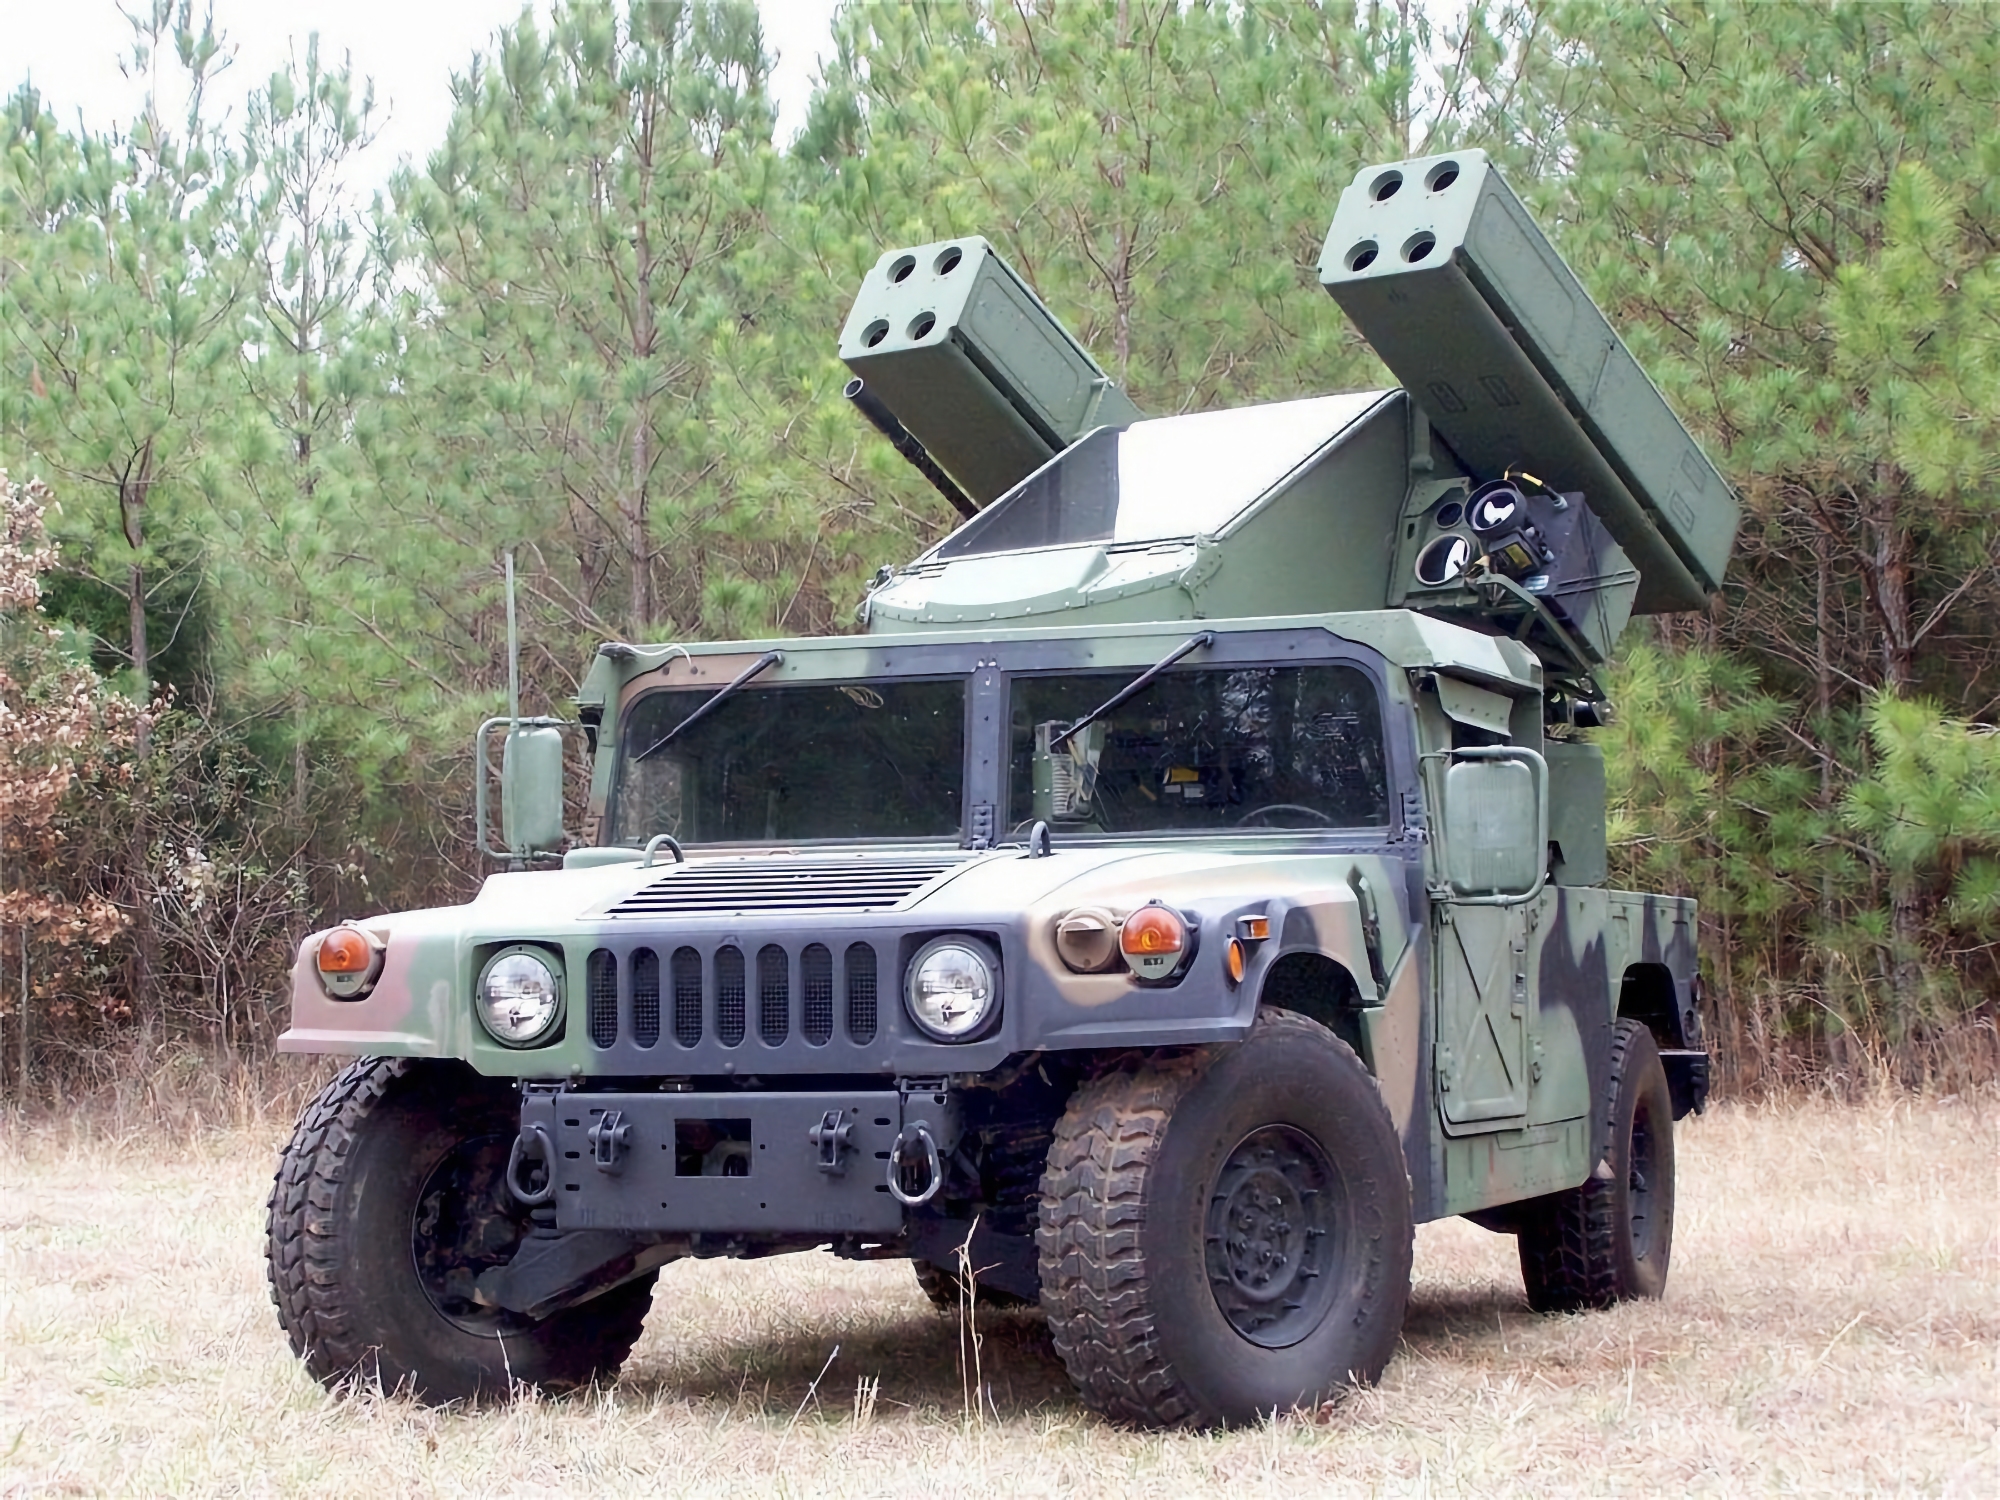 L'AFU reçoit un AN/TWQ-1 Avenger SAM avec des missiles Stinger, capable de détruire des cibles aériennes jusqu'à une distance de 5,5 km.